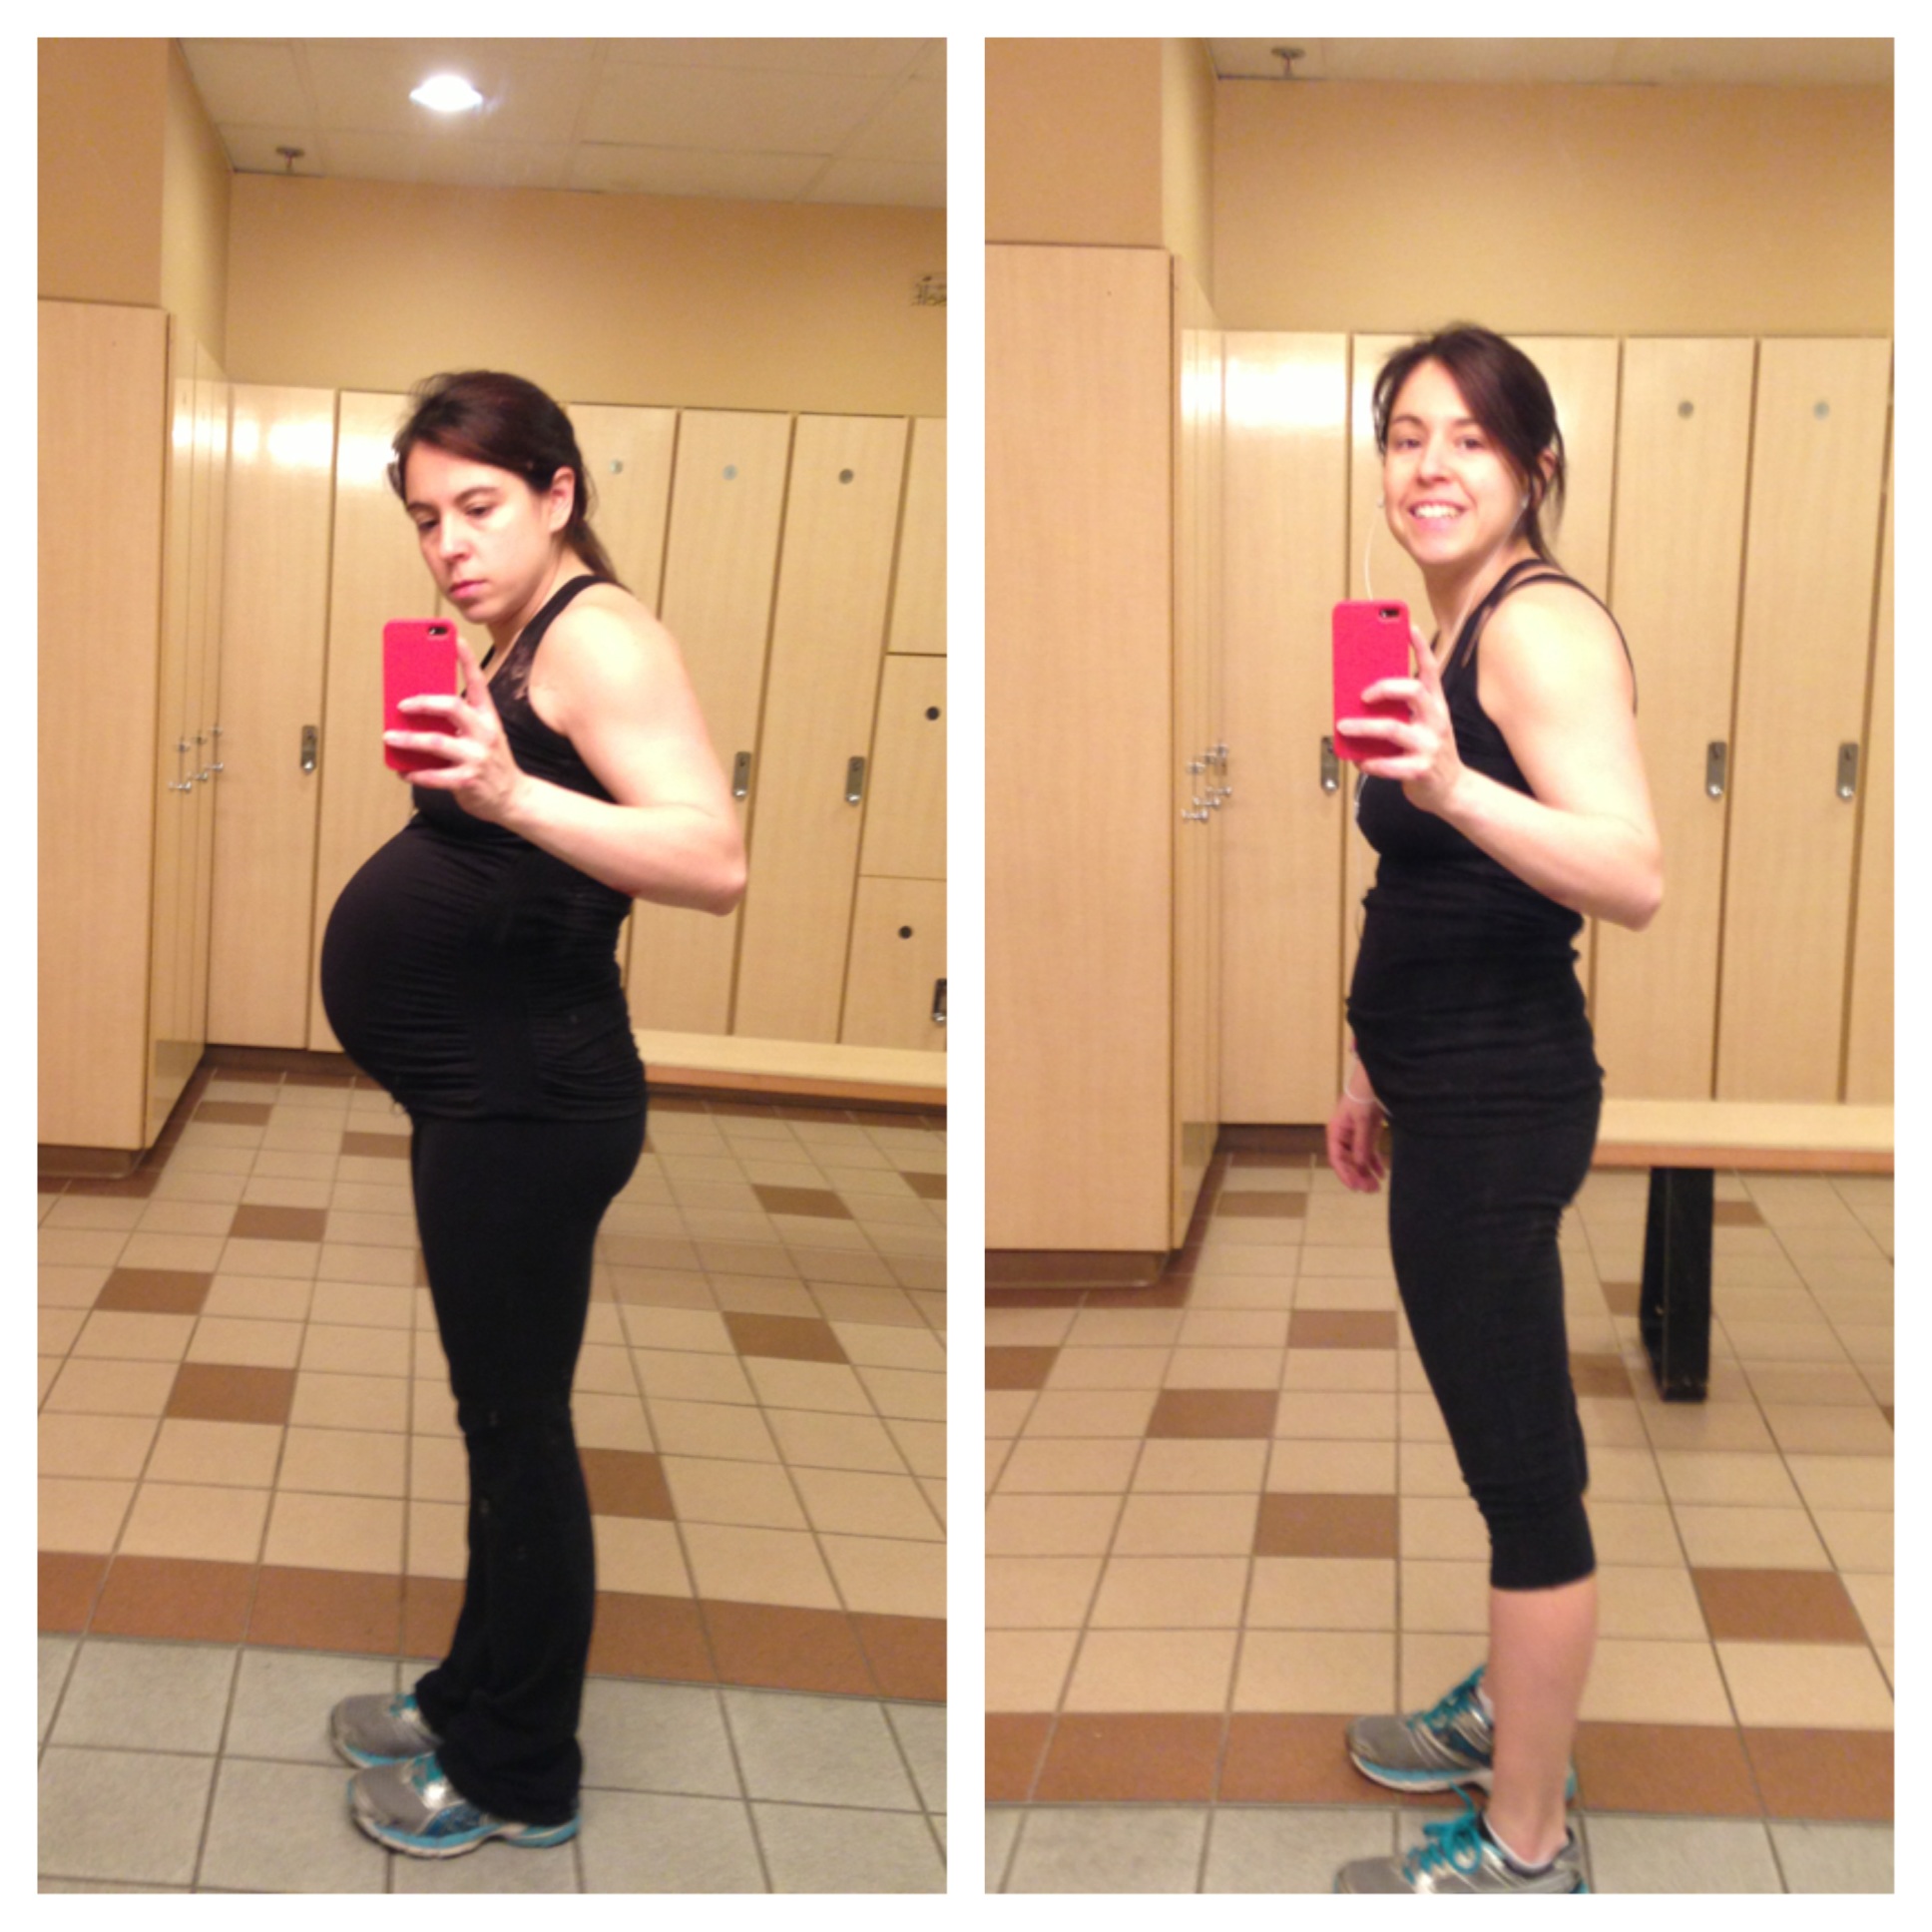 38 weeks pregnant vs 5 weeks postpartum